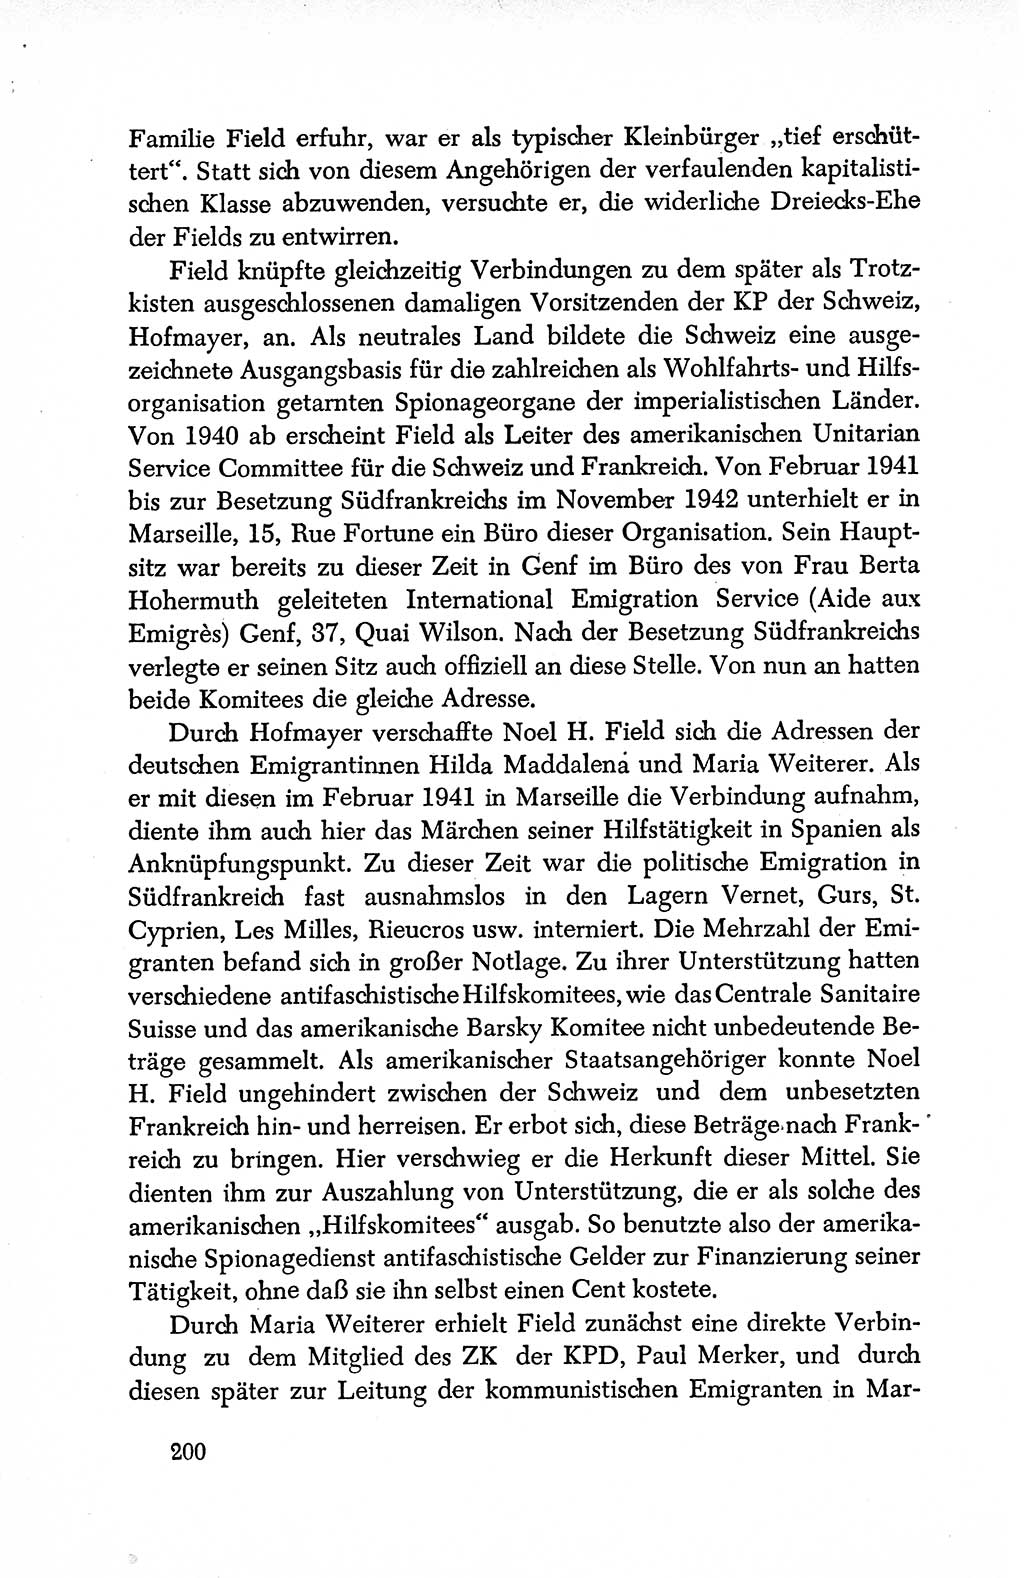 Dokumente der Sozialistischen Einheitspartei Deutschlands (SED) [Deutsche Demokratische Republik (DDR)] 1950-1952, Seite 200 (Dok. SED DDR 1950-1952, S. 200)